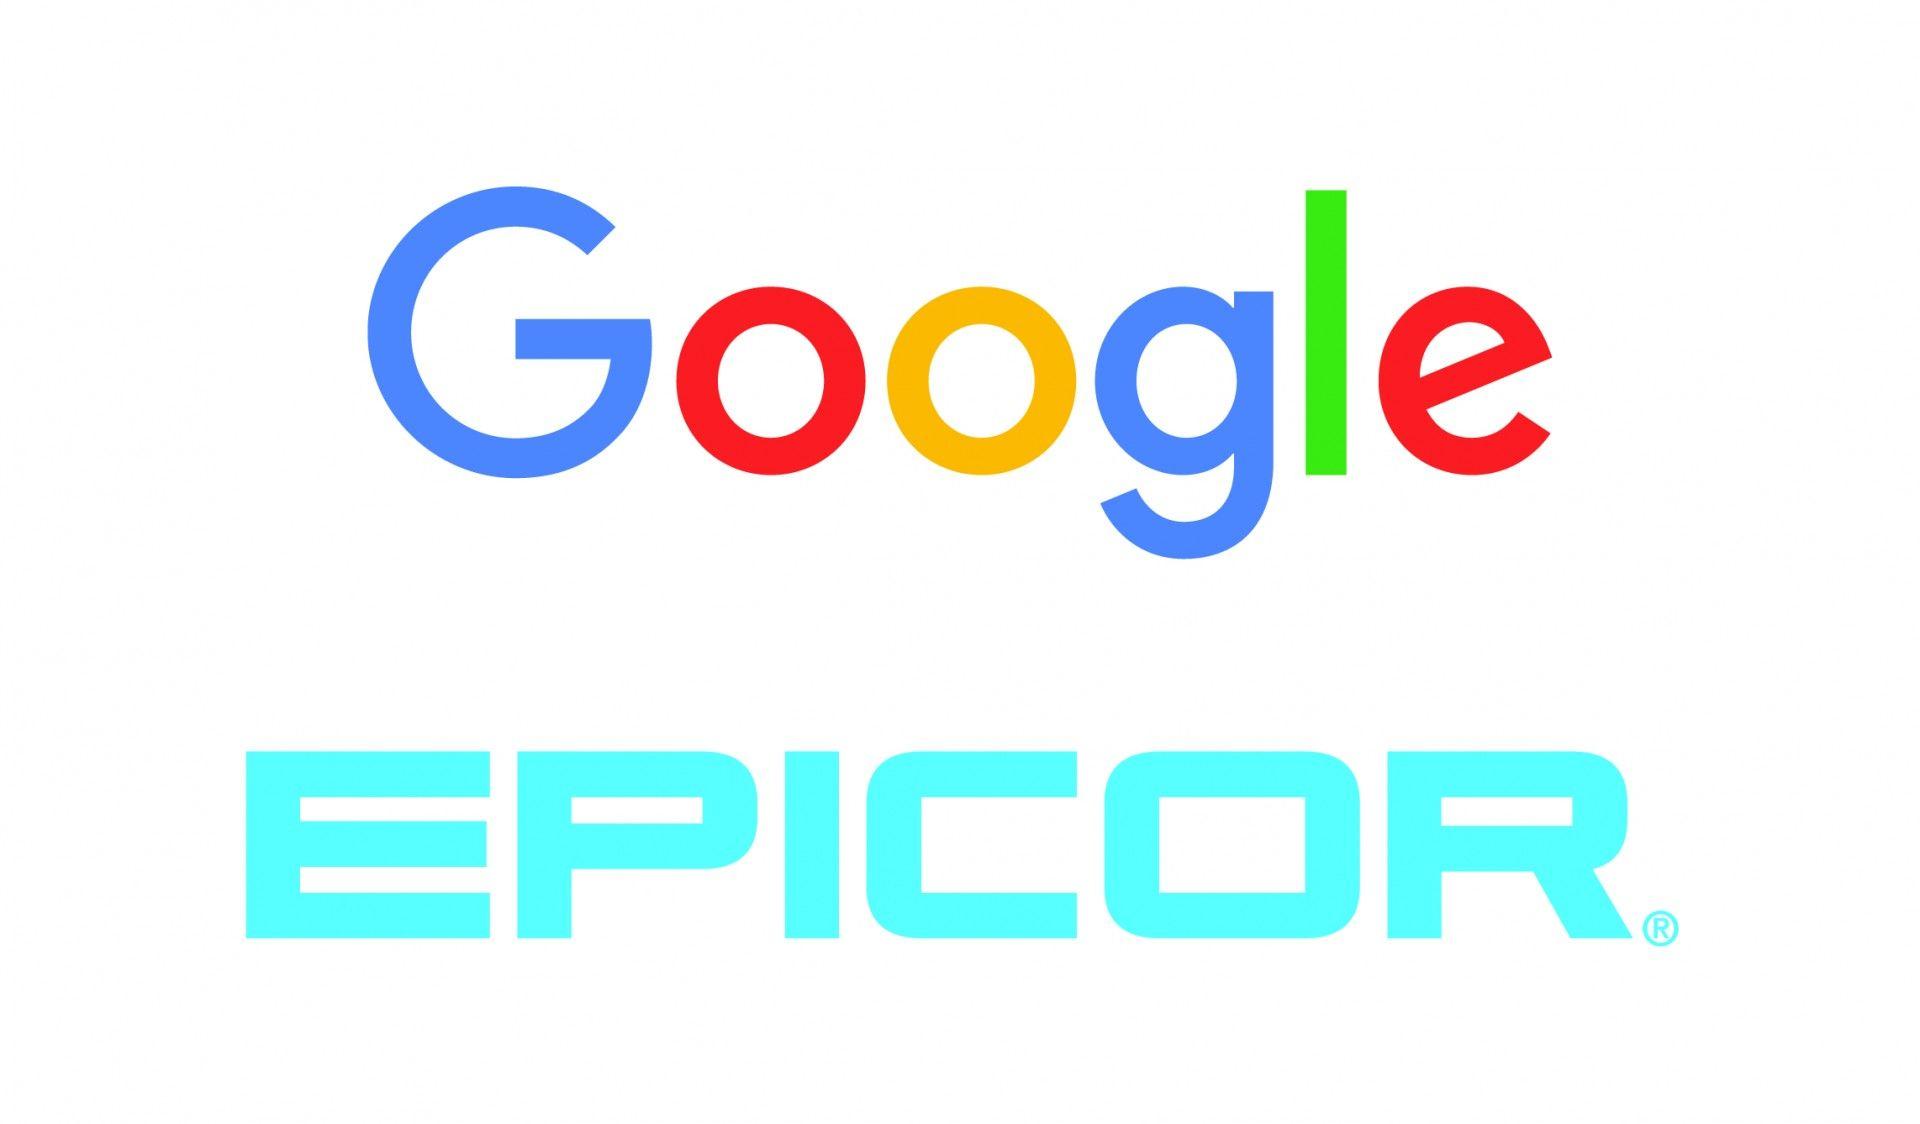 Epicor Logo - Epicor, Google Collaborate in Convenient New Auto Parts Search Feature